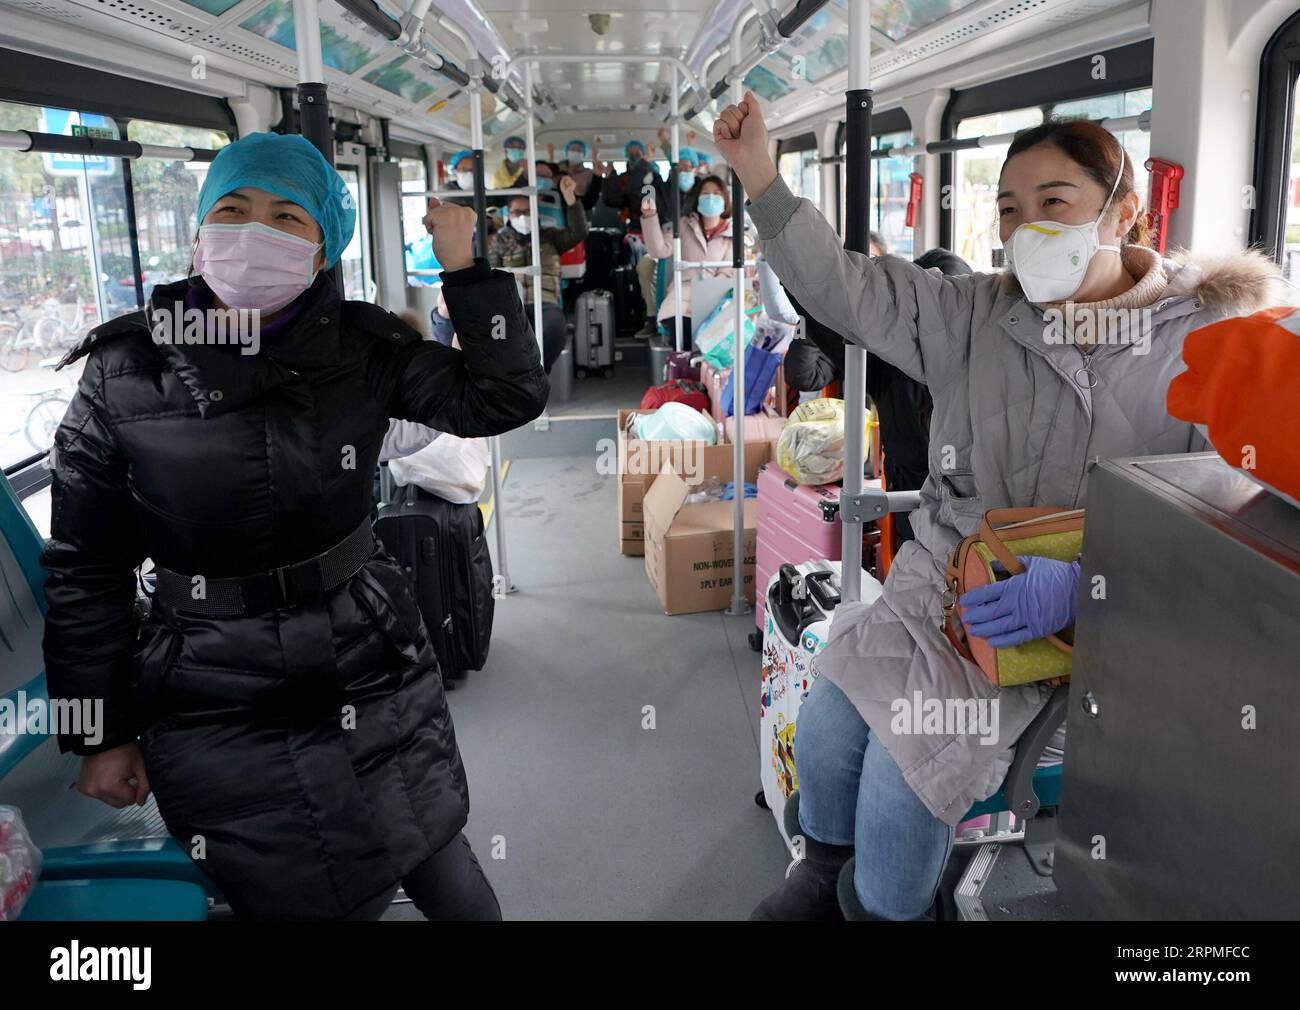 200211 -- WUHAN, 11. Februar 2020 -- medizinisches Personal jubelt sich gegenseitig zu, während es einen Bus in Wuhan, der zentralchinesischen Provinz Hubei, nimmt, 11. Februar 2020. Nachdem Wuhan den öffentlichen Nahverkehr eingestellt hatte, setzte der Wuhan Bus Busse ein, um medizinisches Personal und Menschen zu pendeln, die in den notwendigen Sektoren arbeiteten. CHINA-WUHAN-NCP-BUS-DESINFEKTION CN WANGXYUGUO PUBLICATIONXNOTXINXCHN Stockfoto